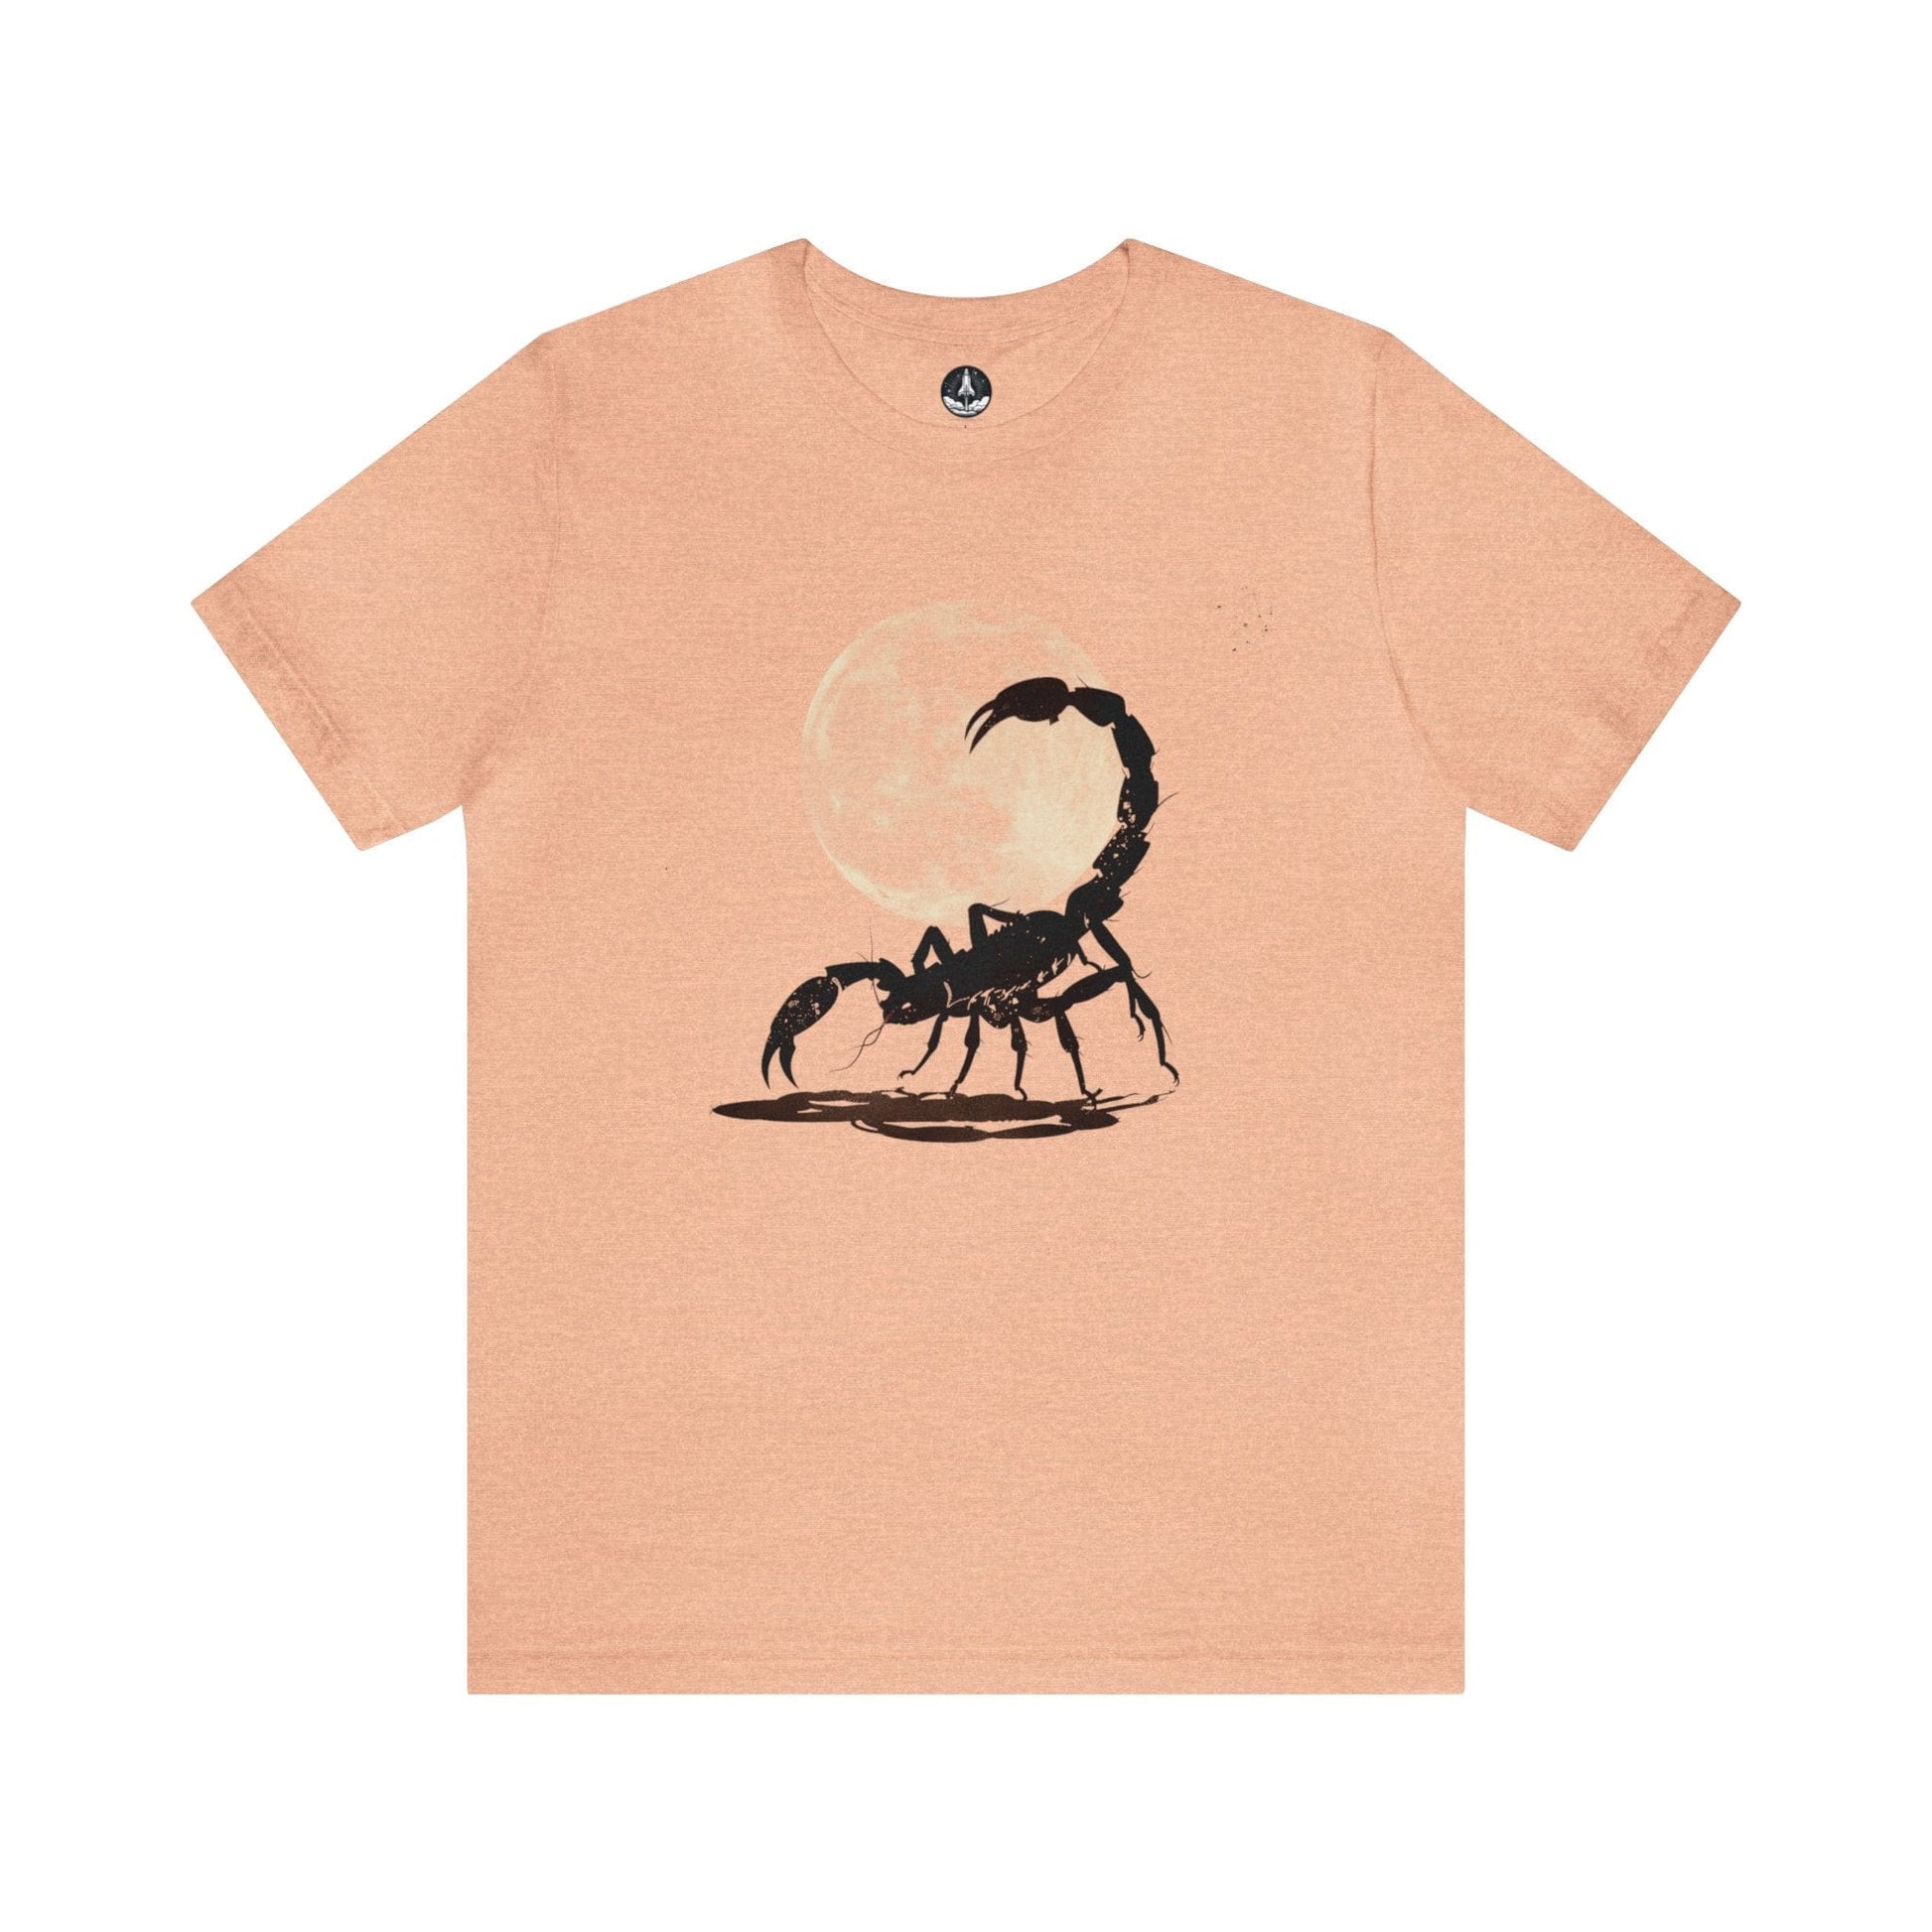 T-Shirt Heather Peach / S Scorpio Midnight Sting T-Shirt